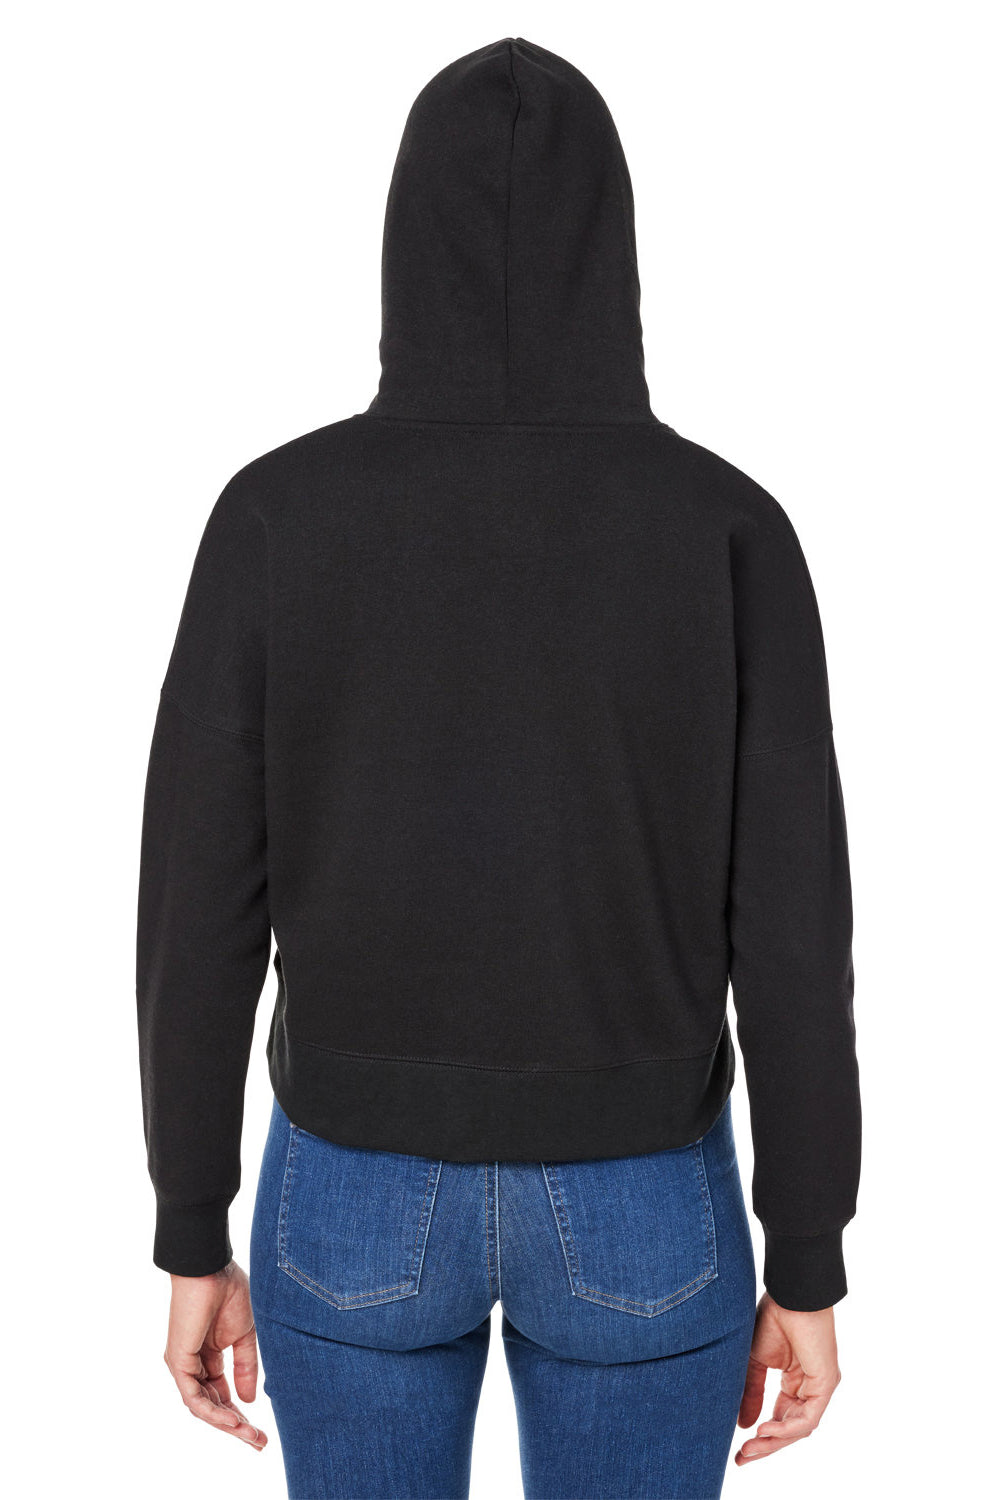 J America 8853JA Womens Cropped Hooded Sweatshirt Hoodie Solid Black Back